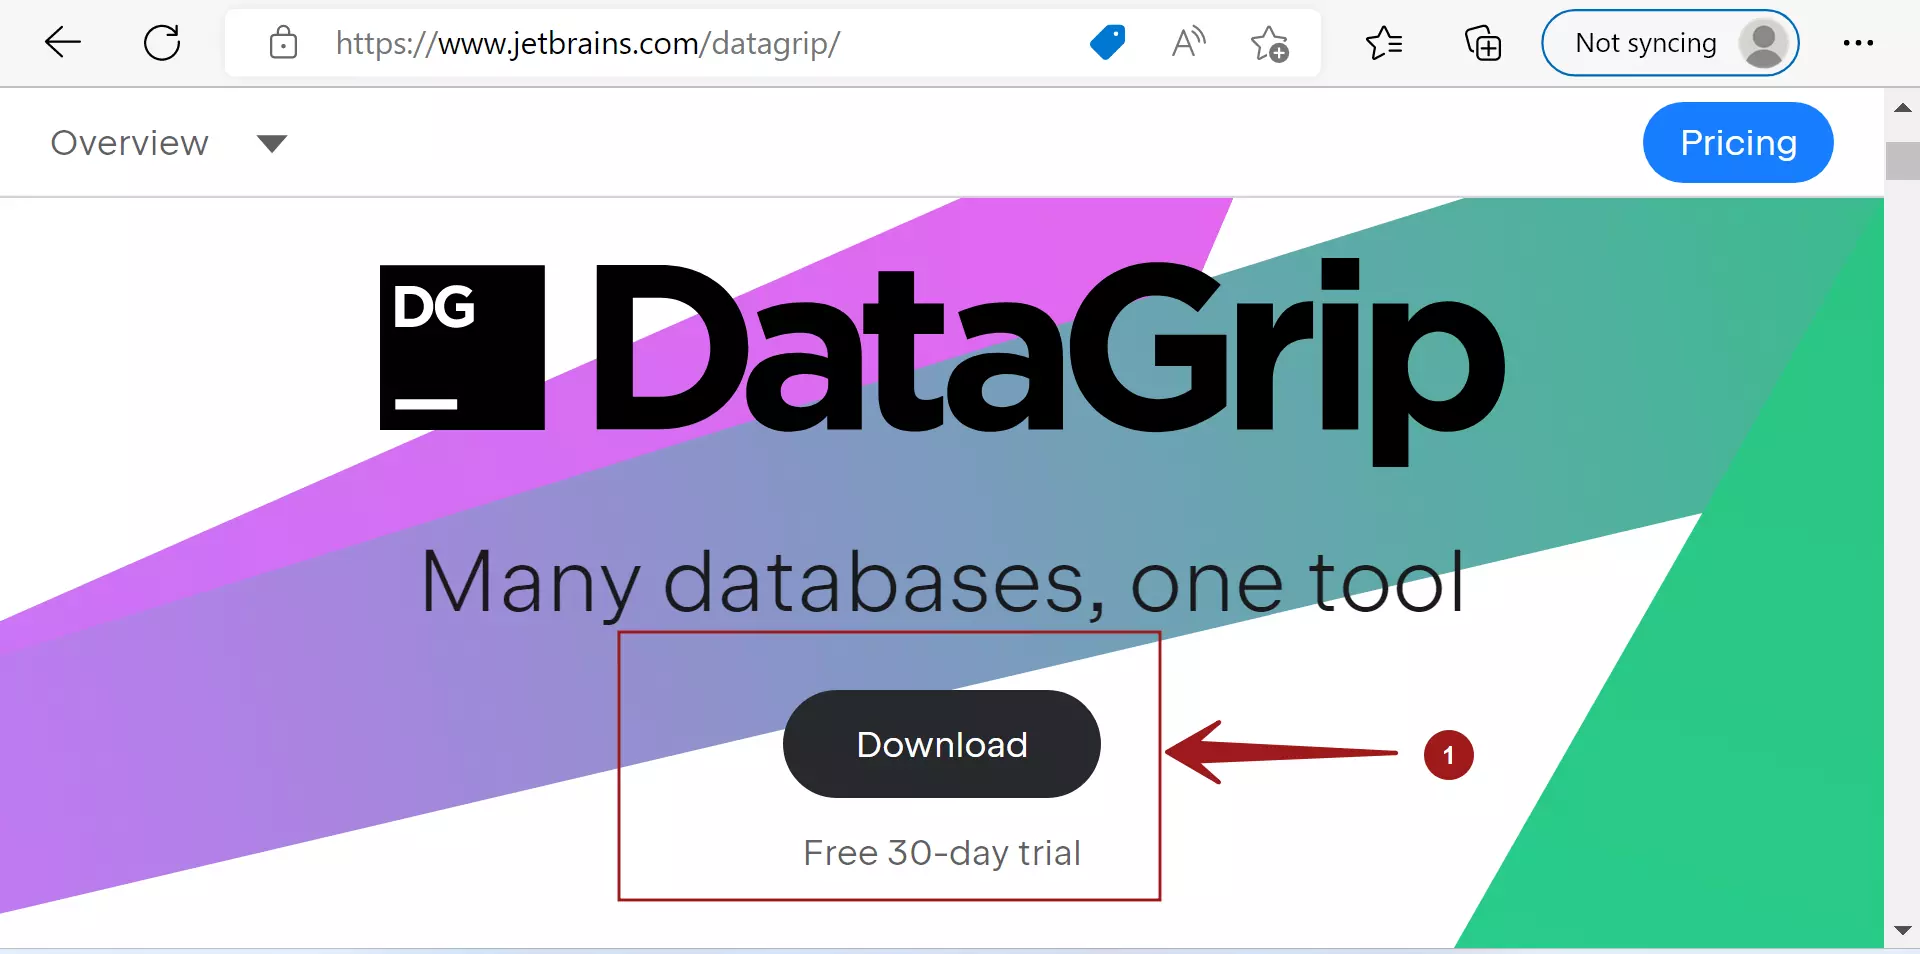 DataGrip Download